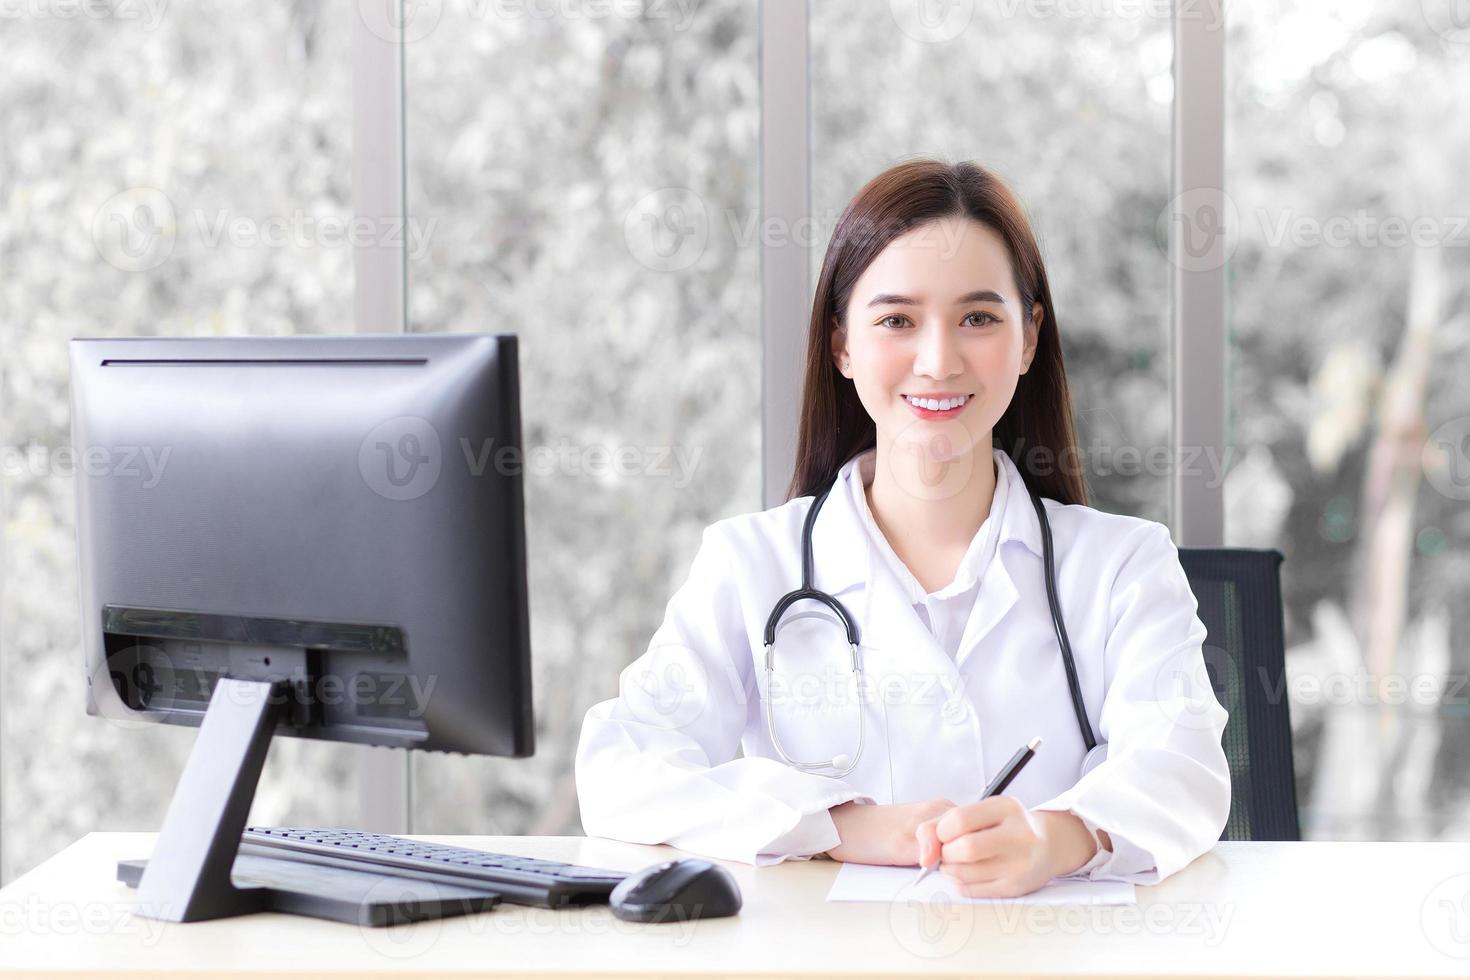 una hermosa doctora asiática que usa un abrigo médico está trabajando en la oficina del hospital mientras tiene una computadora en la mesa. foto